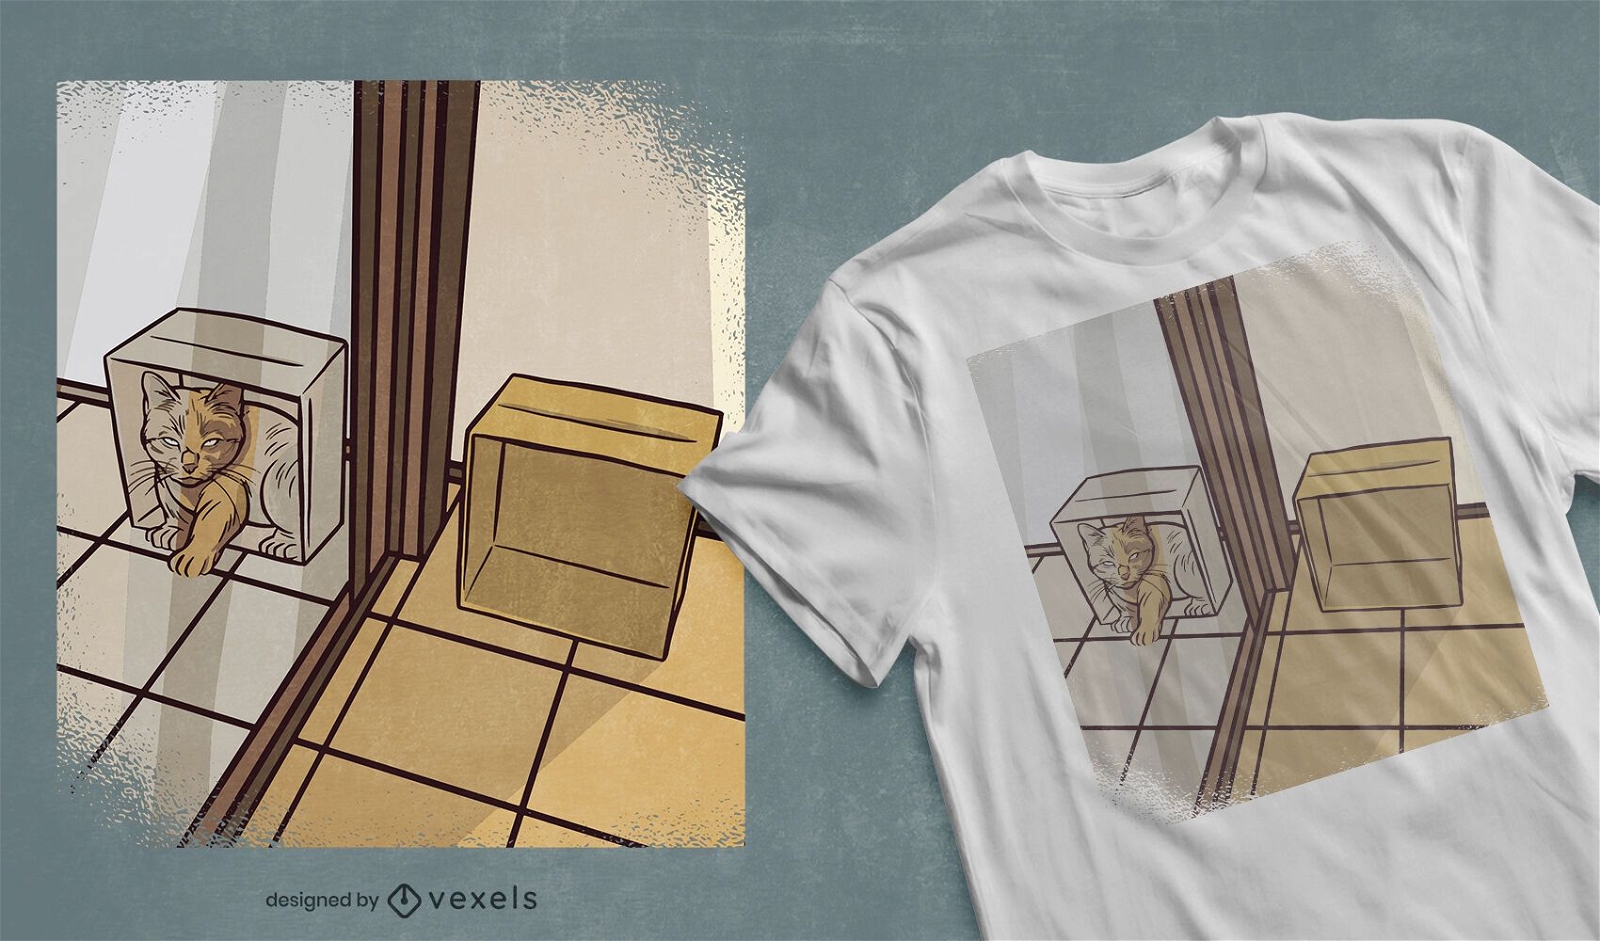 Katze im Spiegelbox-T-Shirt Design